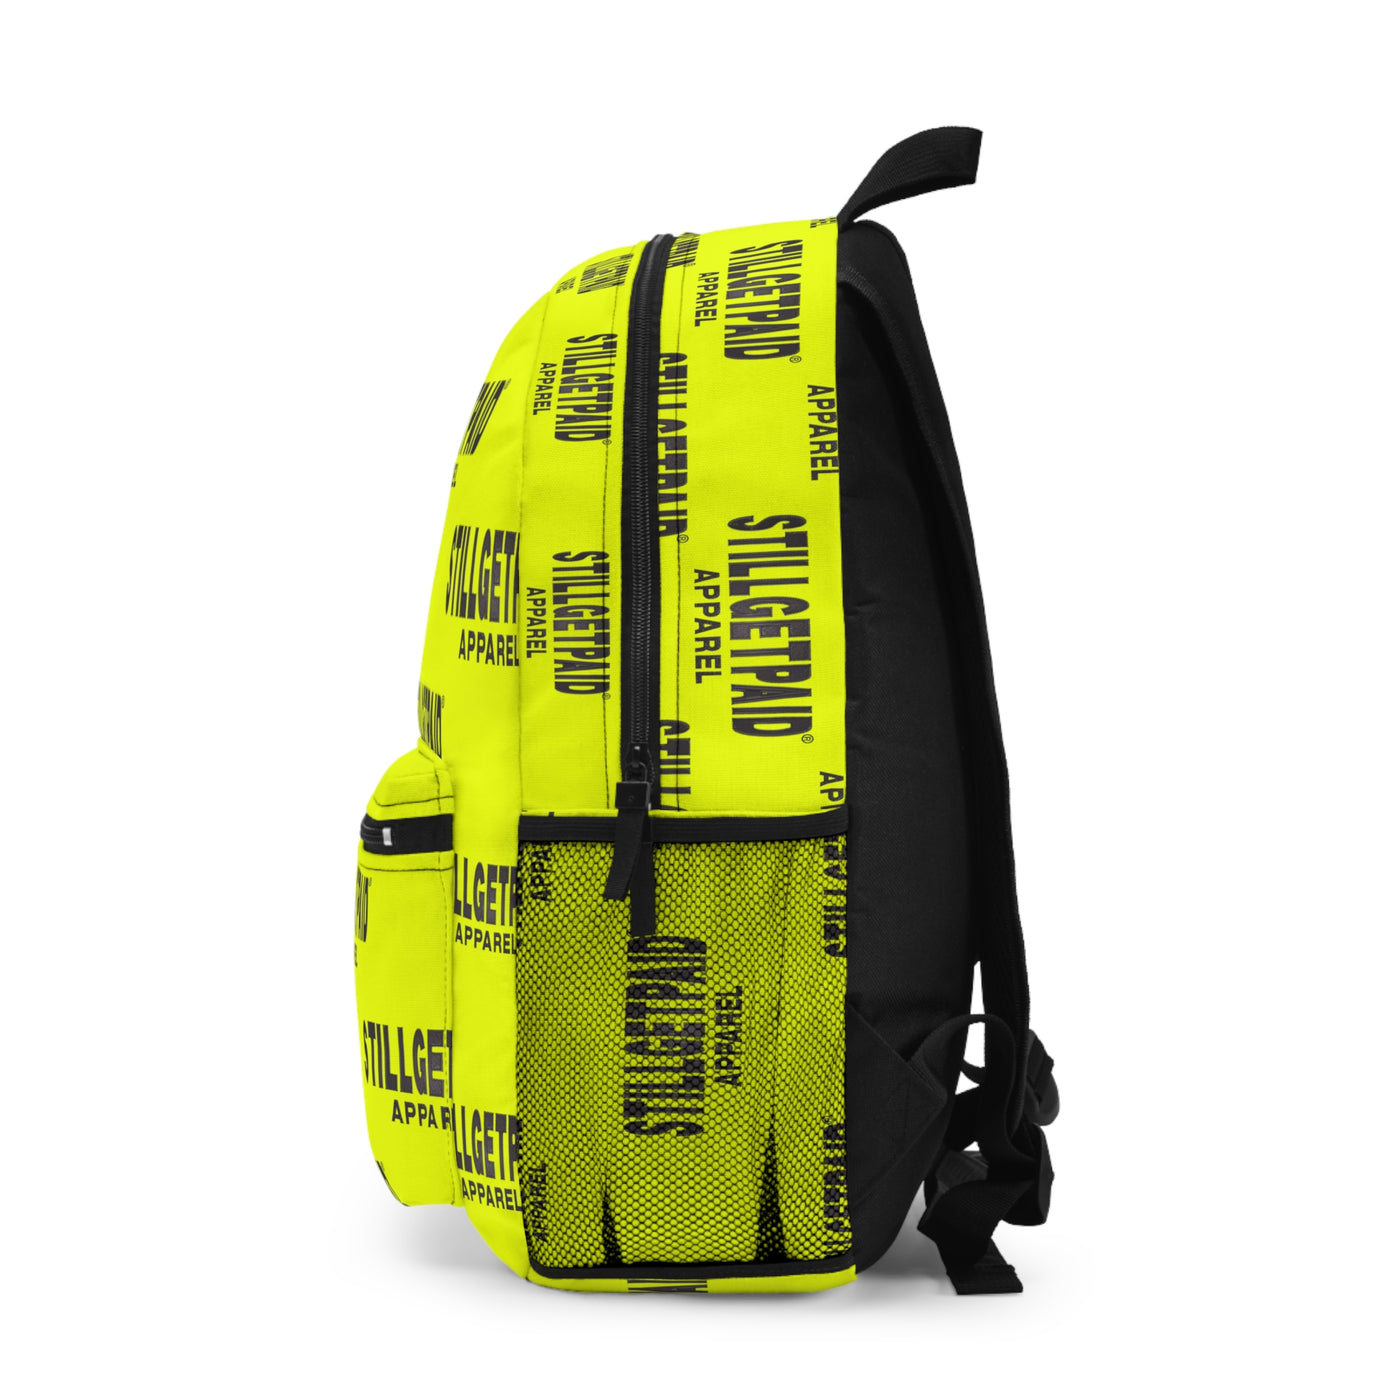 STILLGETPAID Backpack FULL